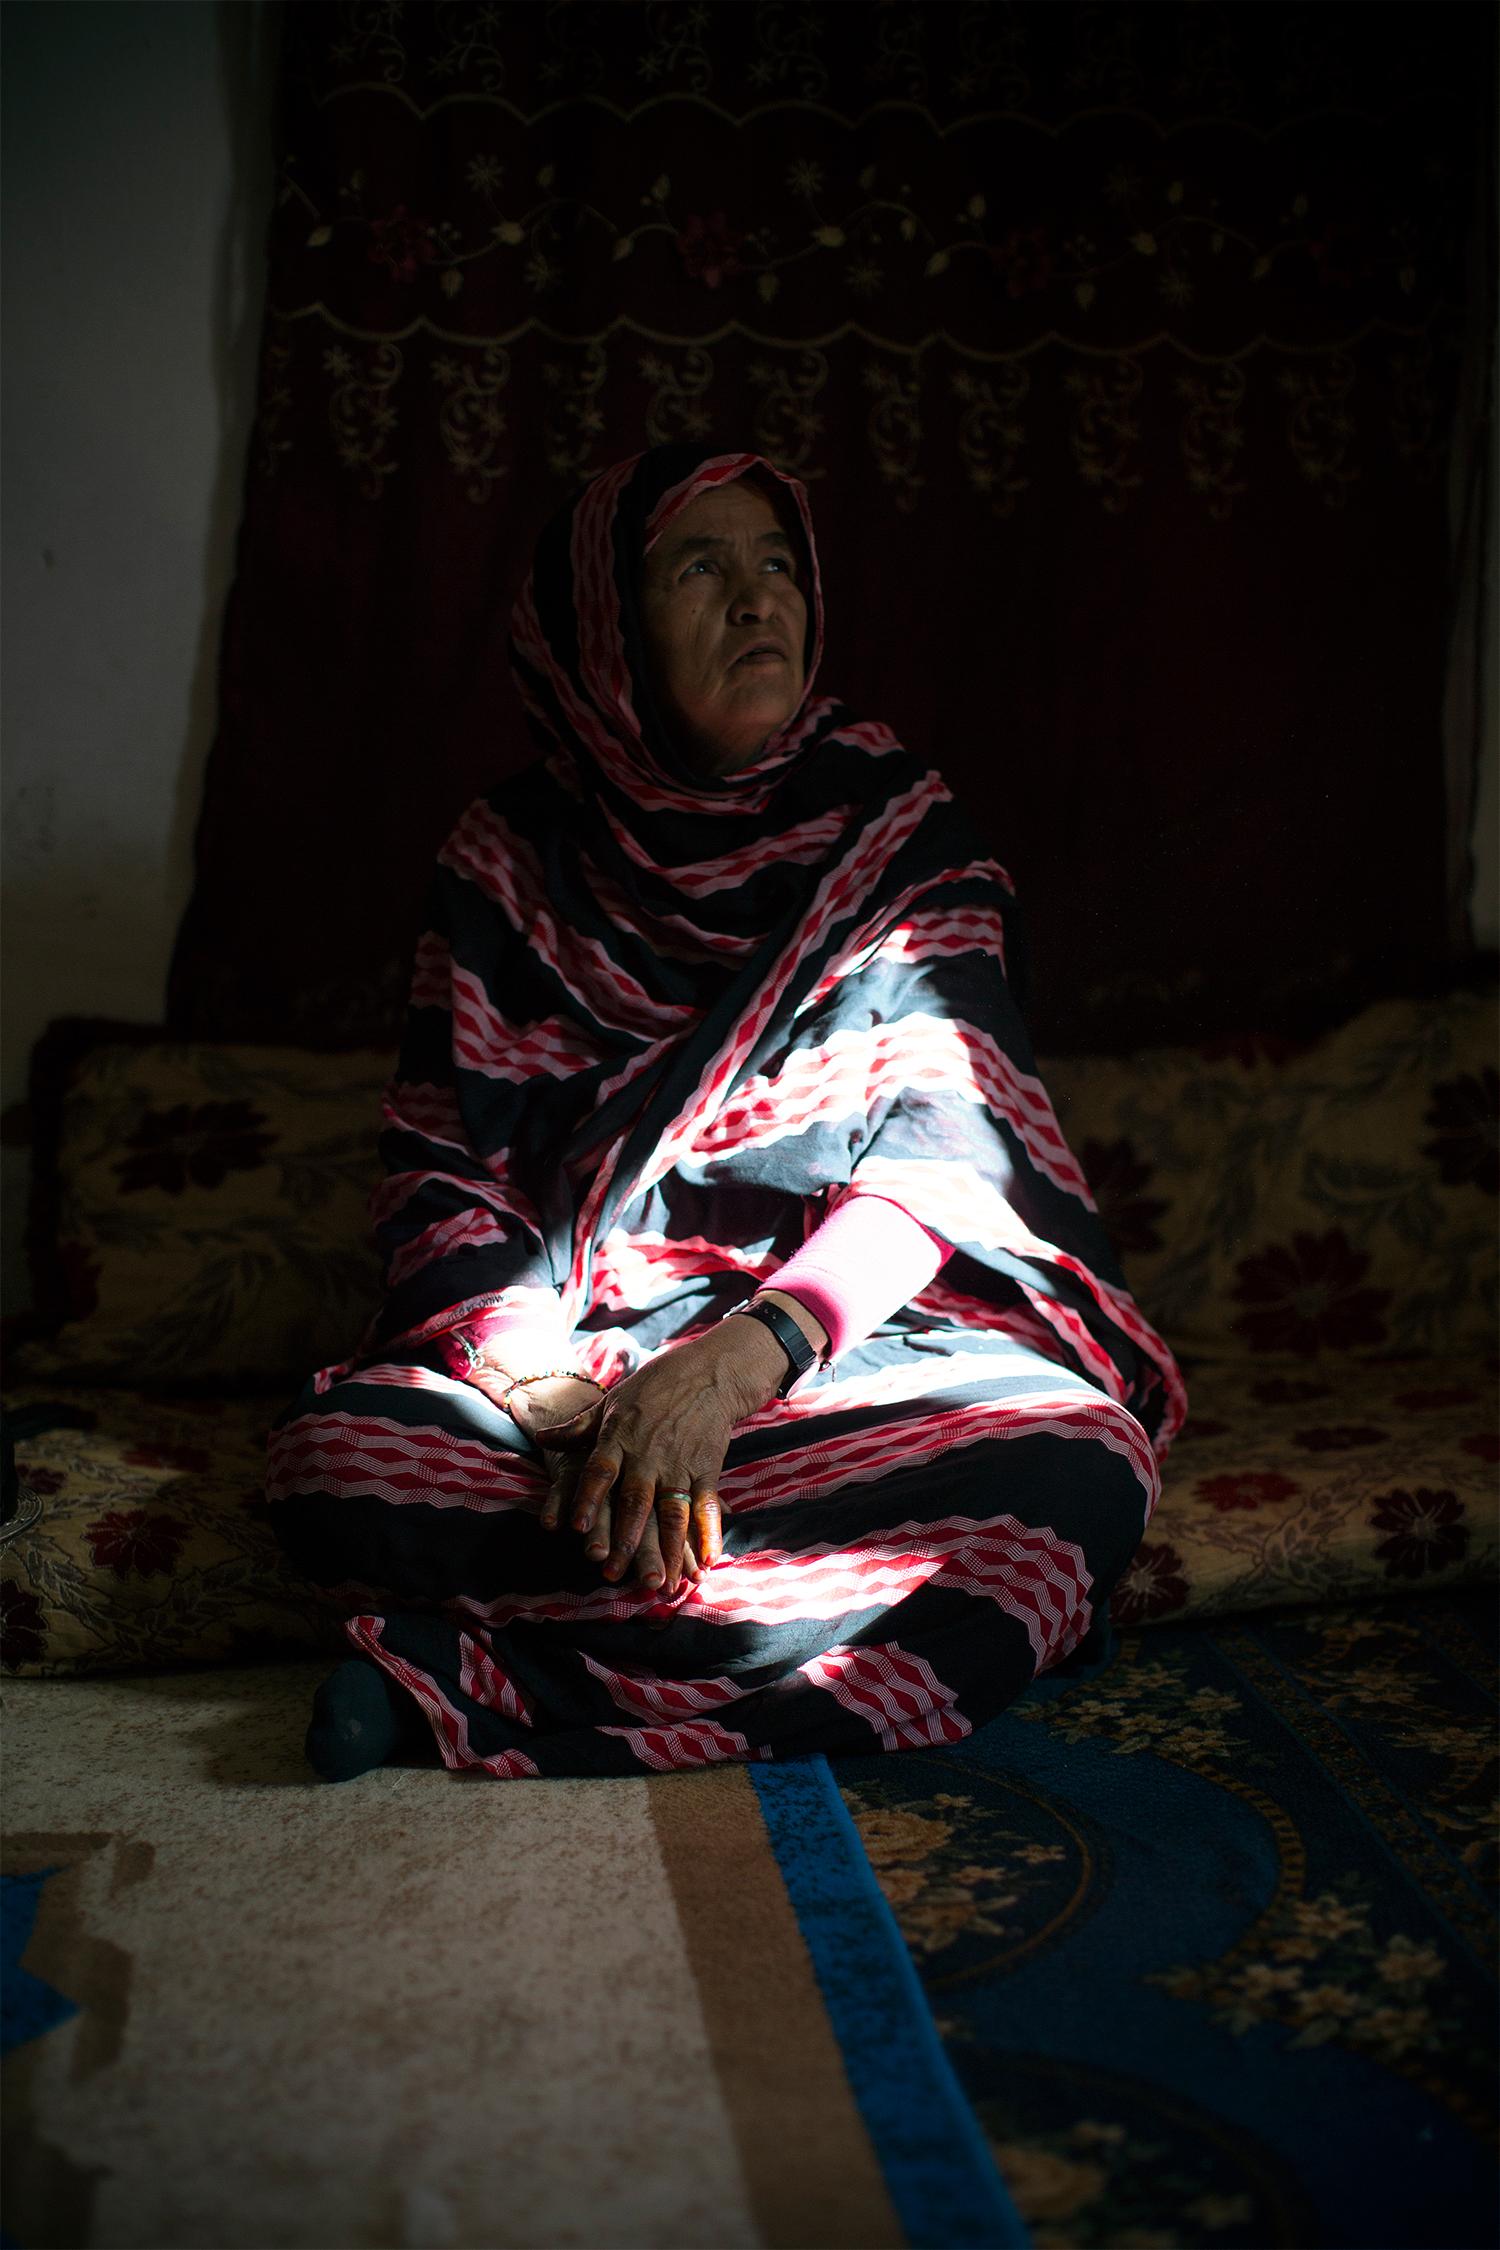 70-åriga Maluha Ahmed Omar bor i det västsahariska flyktinglägret Auserd utanför algeriska Tindouf. ”Vapenvilan var ett stort misstag”, tycker hon. Johan Persson